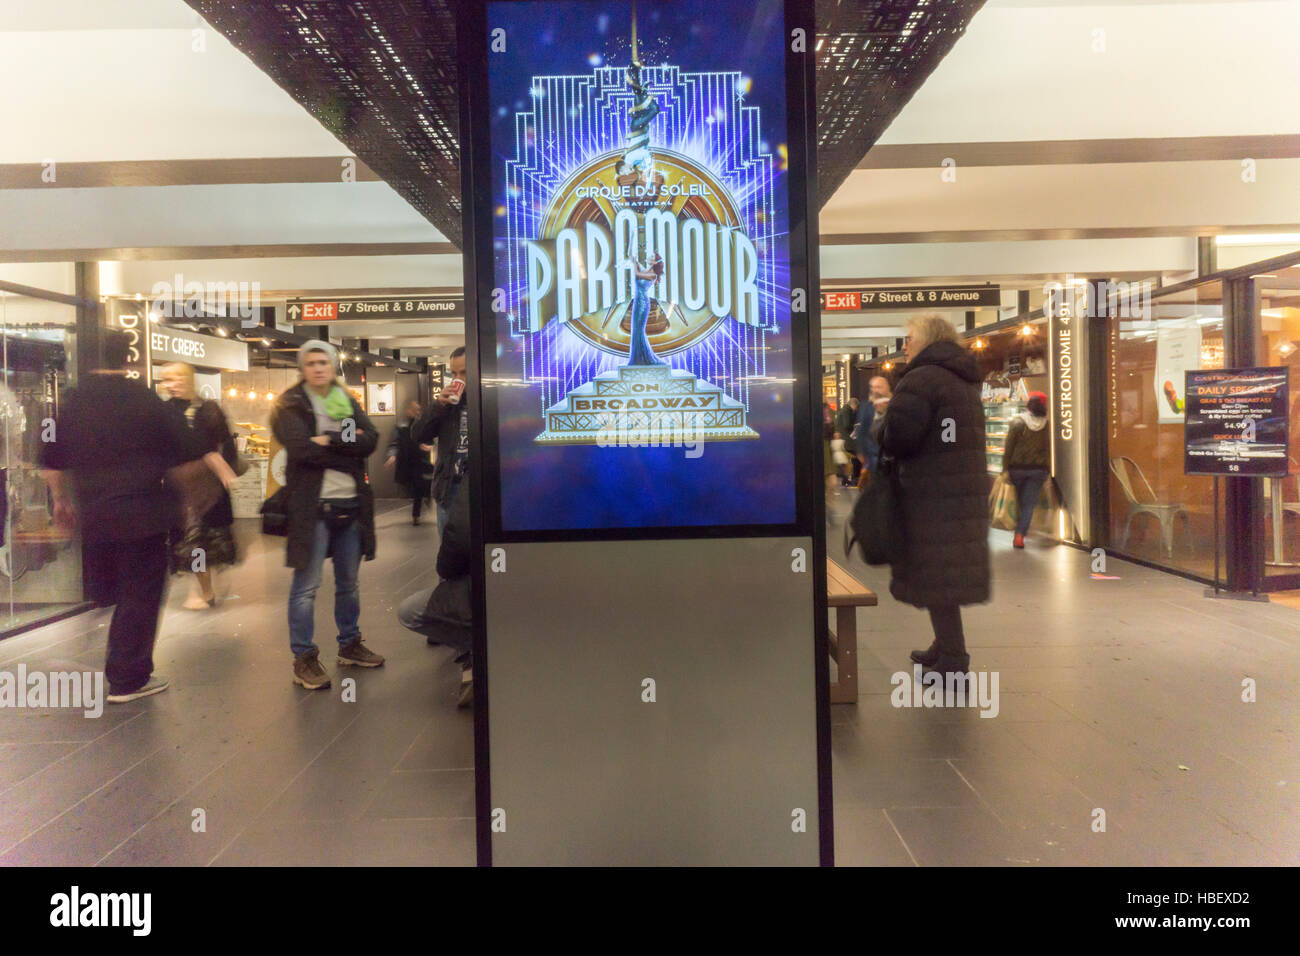 Promotion pour le Cirque du Soleil's musical de Broadway "amant", dans Turnstyle, un centre commercial et de foodie arcade dans le métro à New York le Mardi, Novembre 29, 2016. 'Amant' est au Lyric Theatre et est au sujet de l'âge d'or de Hollywood. (© Richard B. Levine) Banque D'Images